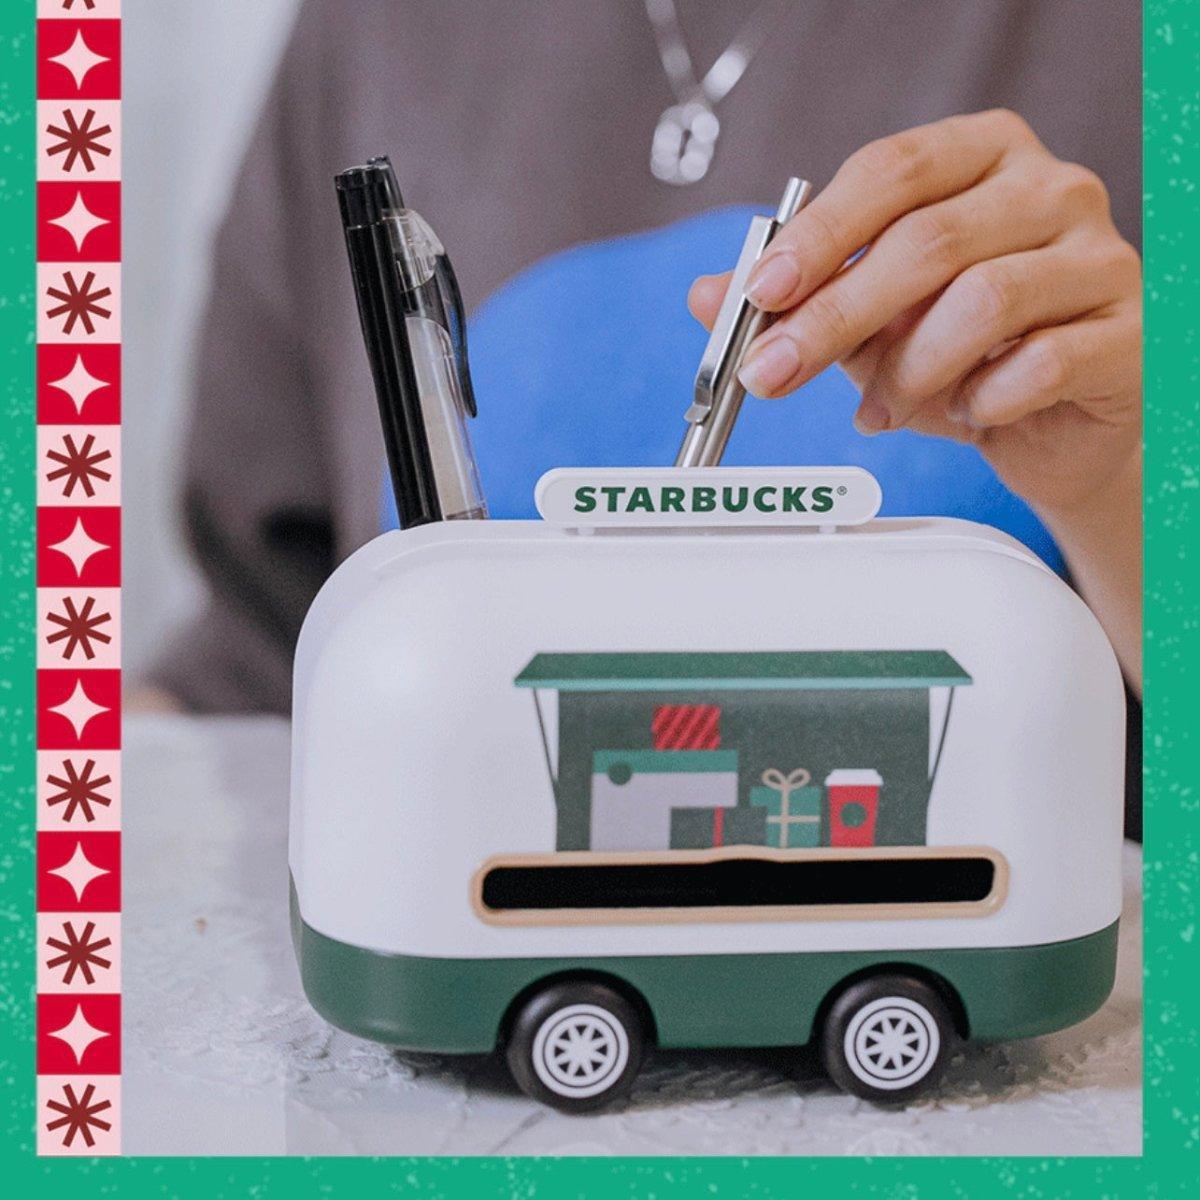 Starbucks Car tissue box - Ann Ann Starbucks